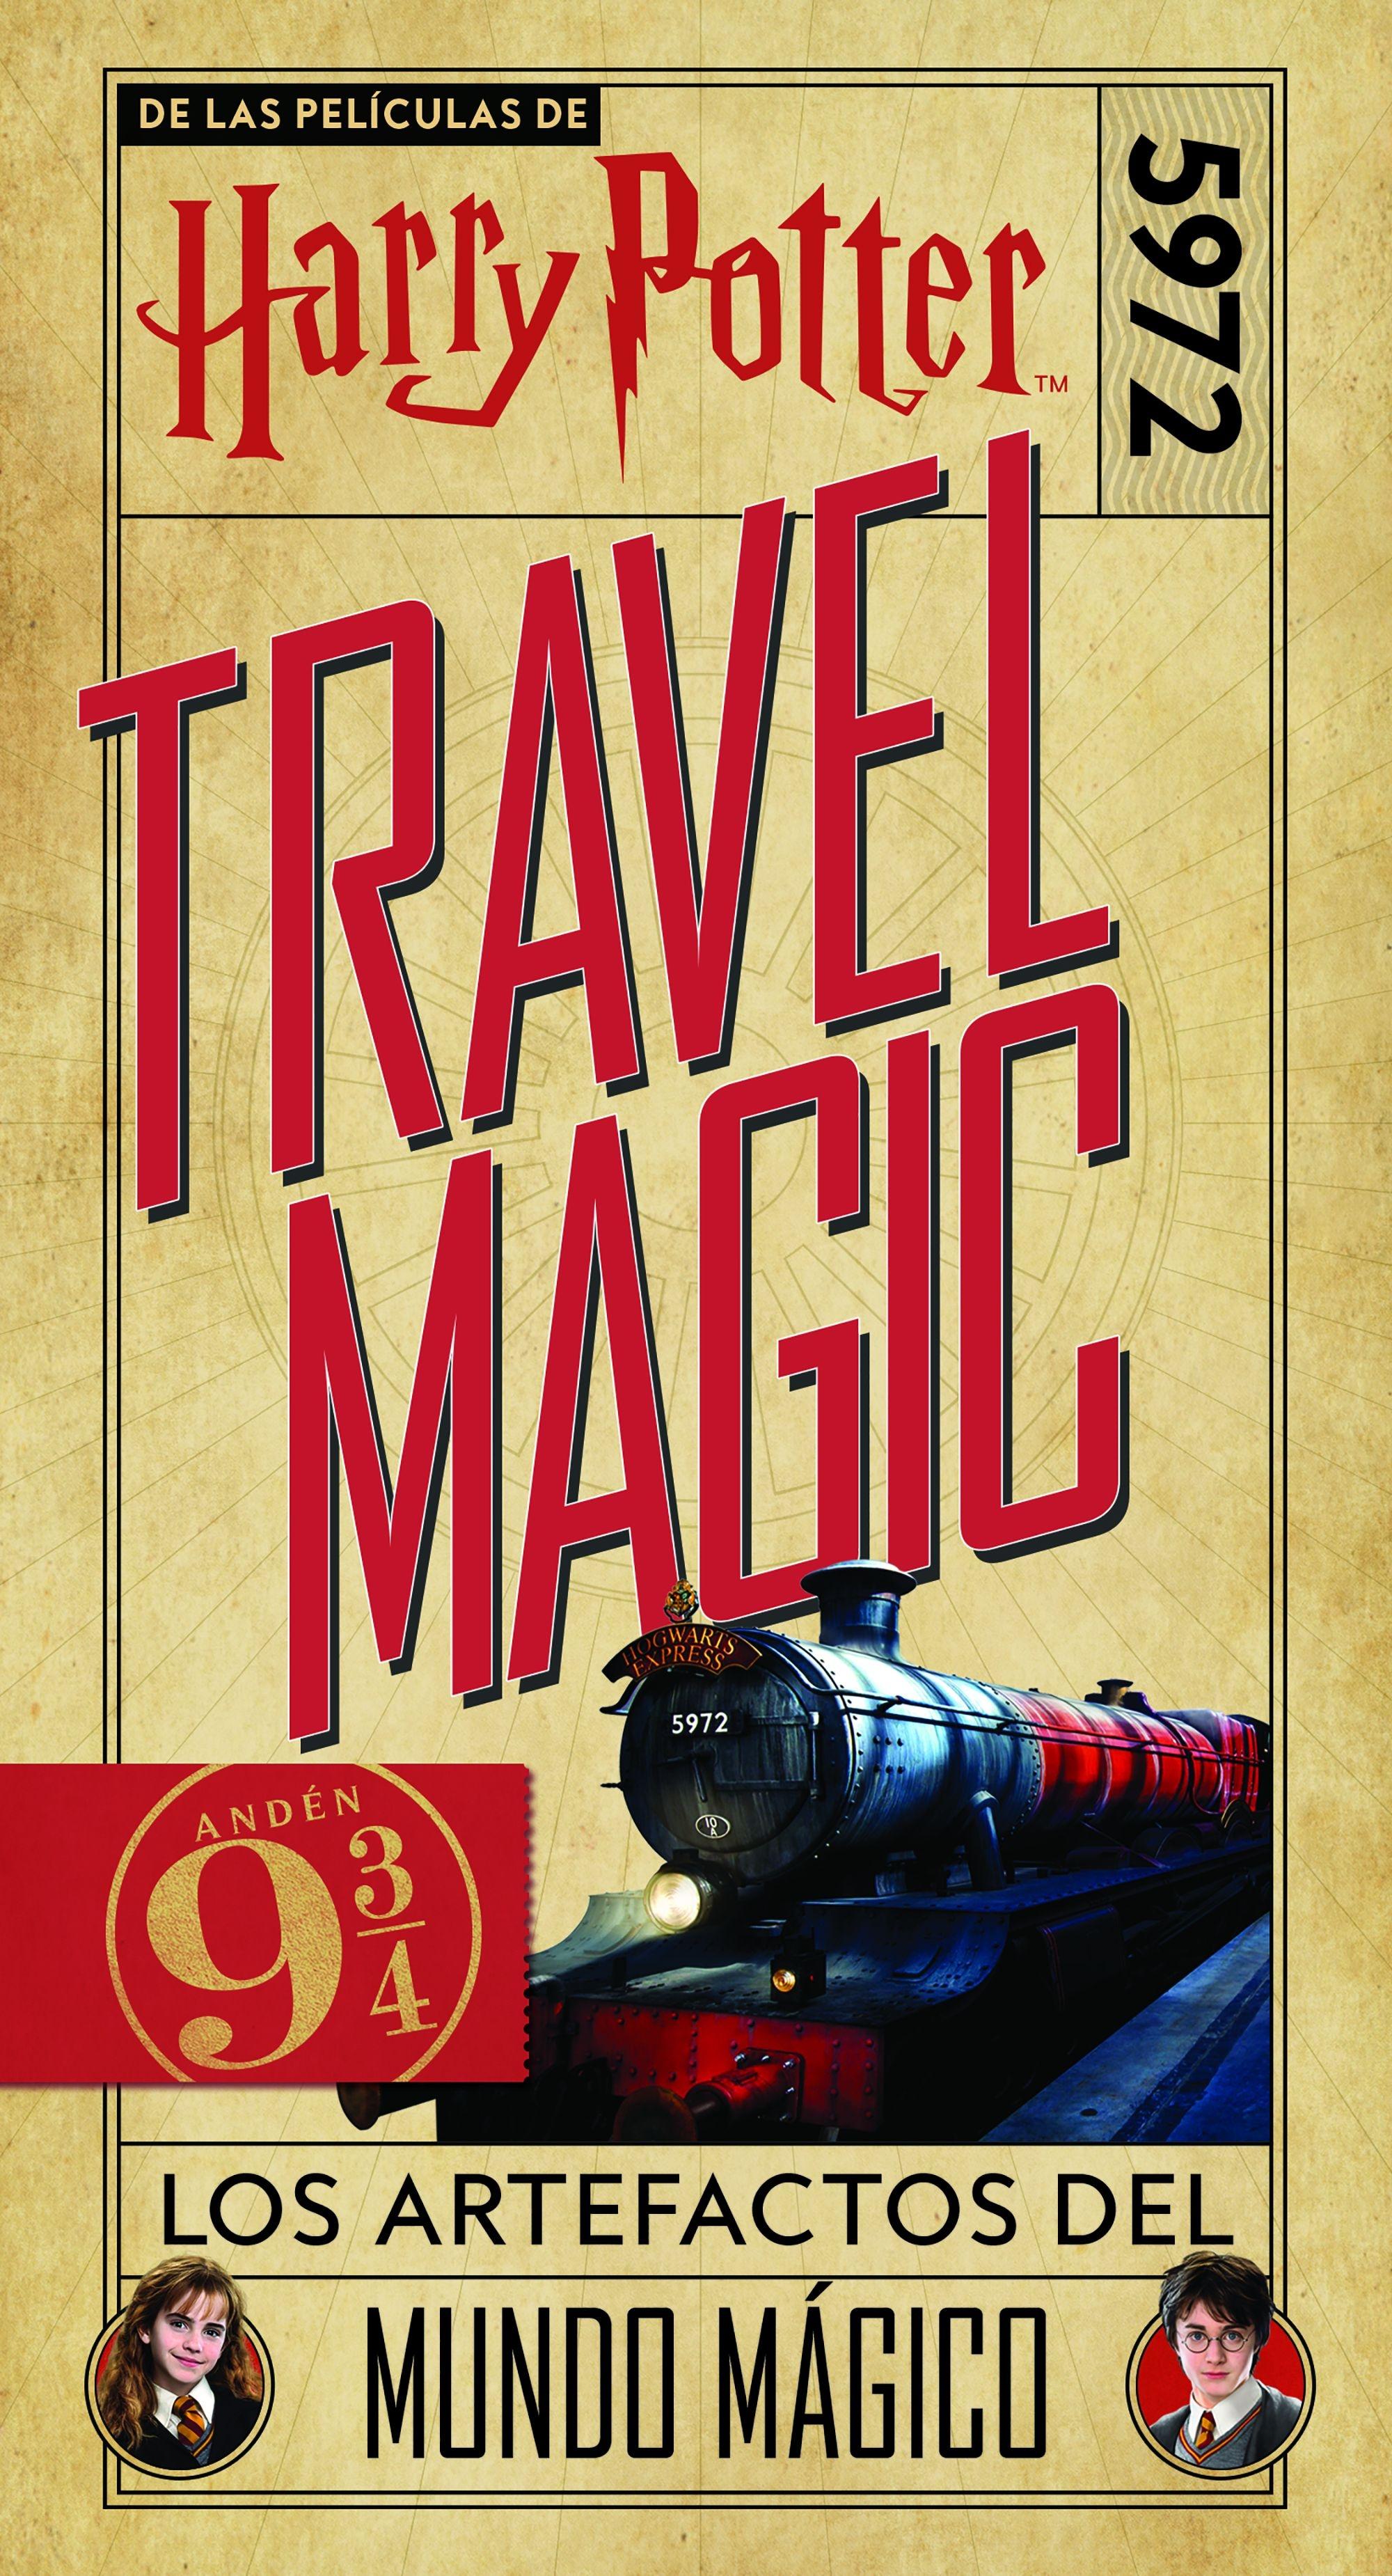 Harry Potter Travel Magic "Los artefactos del mundo mágico"